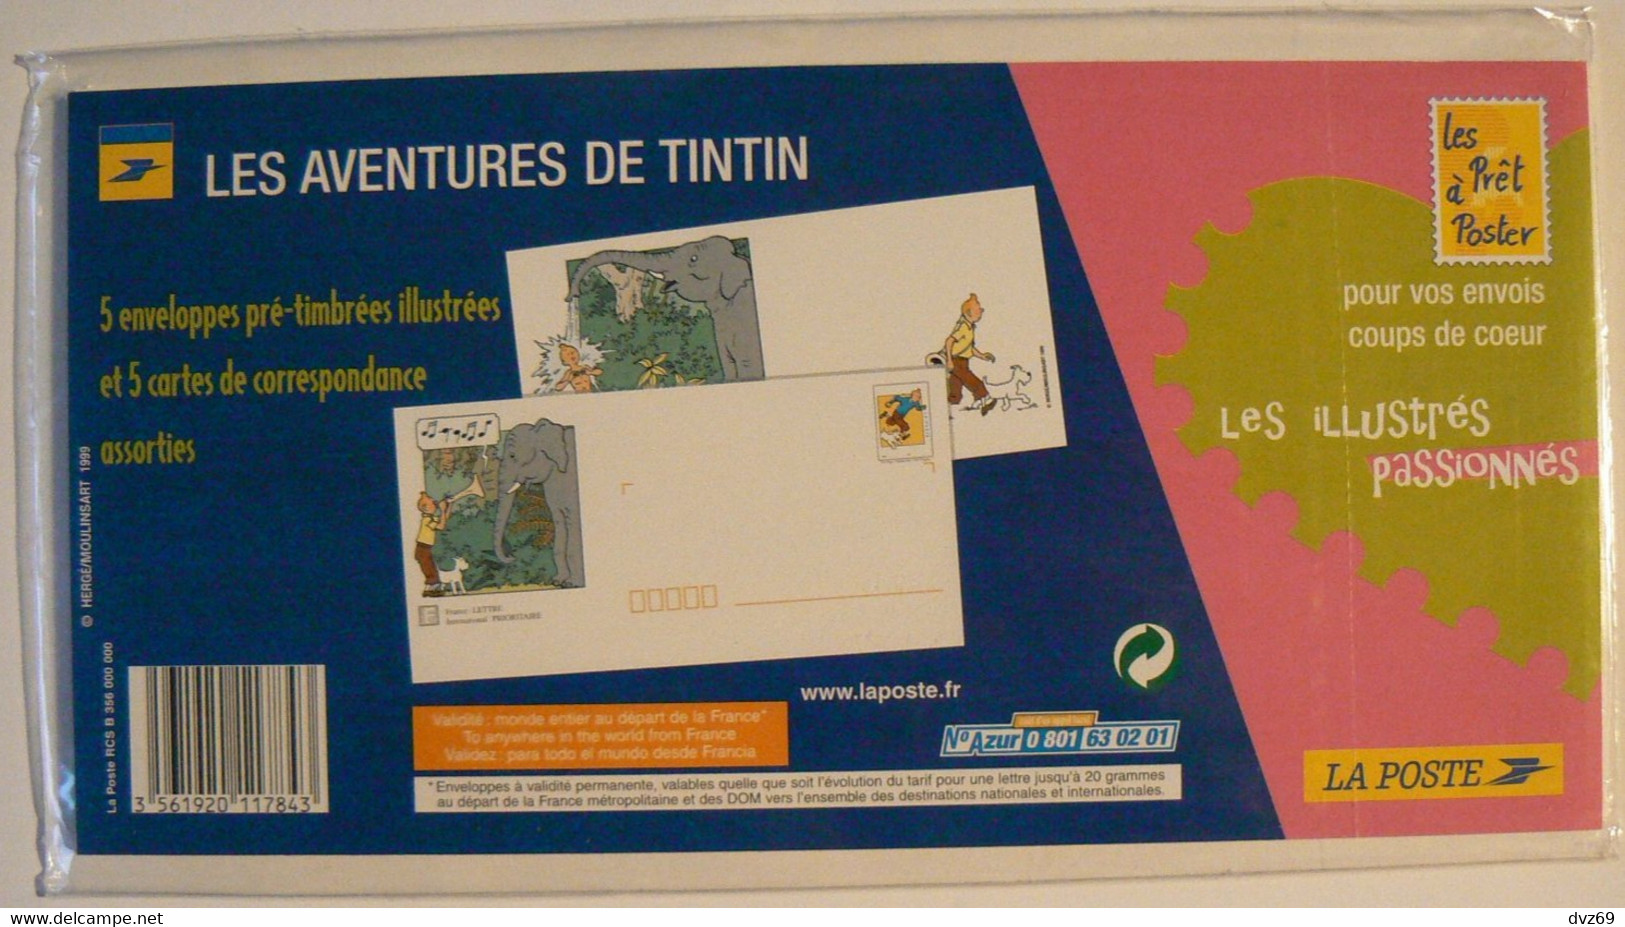 TINTIN 1999, 5 Enveloppes Pré-timbrées Illustrées + Cartes Assorties, Encore Sous Blister D'origine, TB. - Konvolute: Ganzsachen & PAP